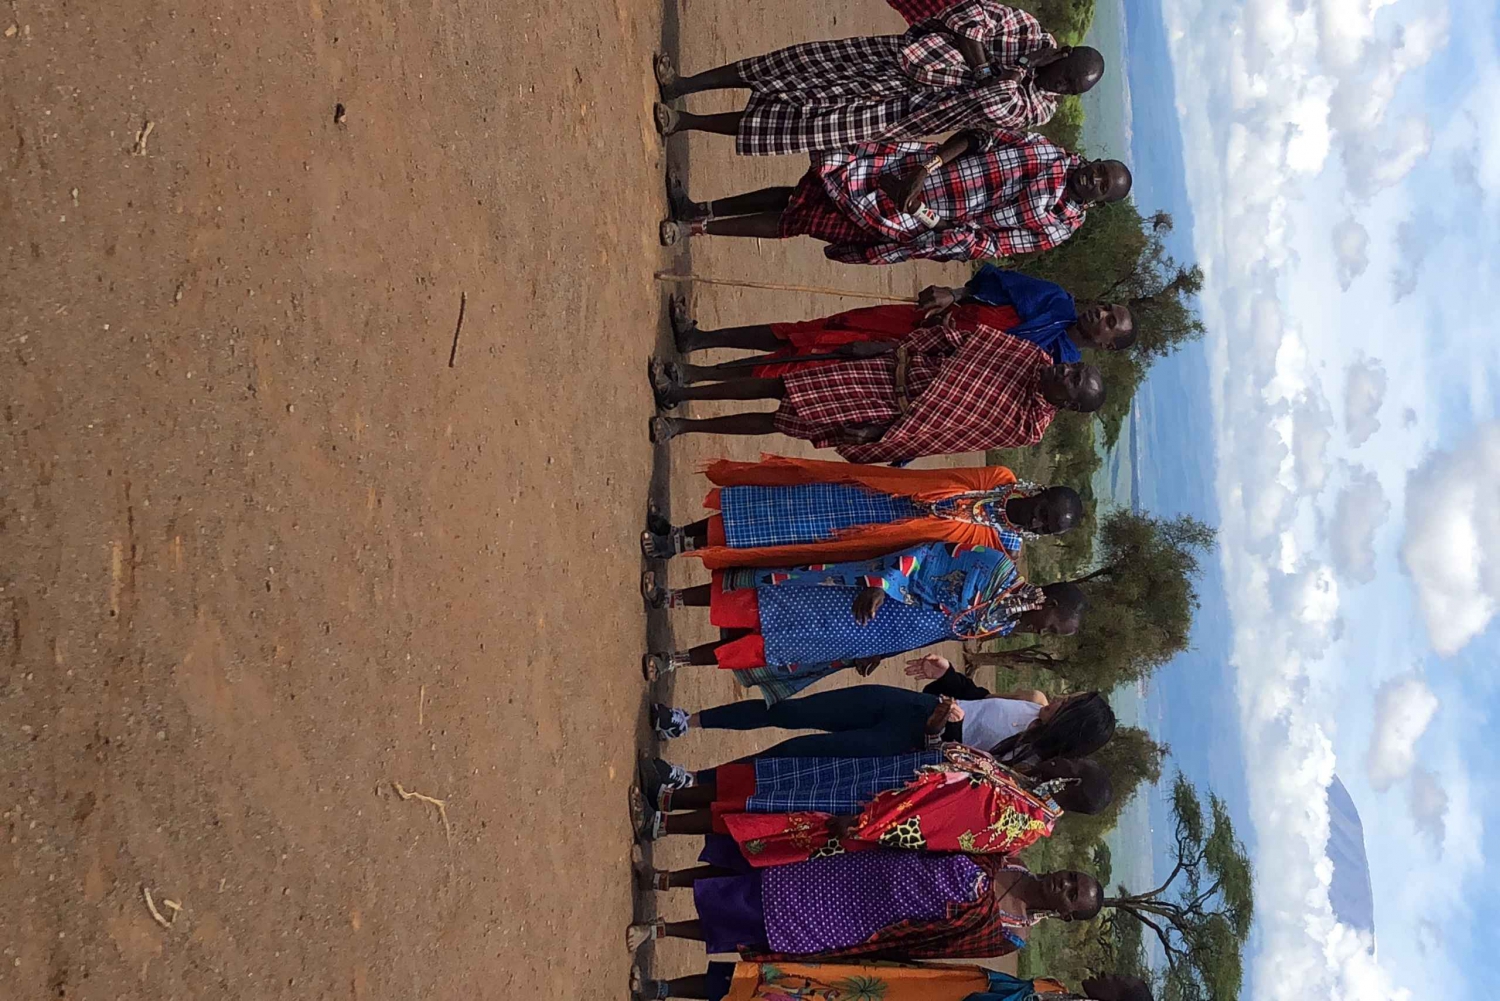 Tour del villaggio Masai e cultura a Kajiado da Nairobi.